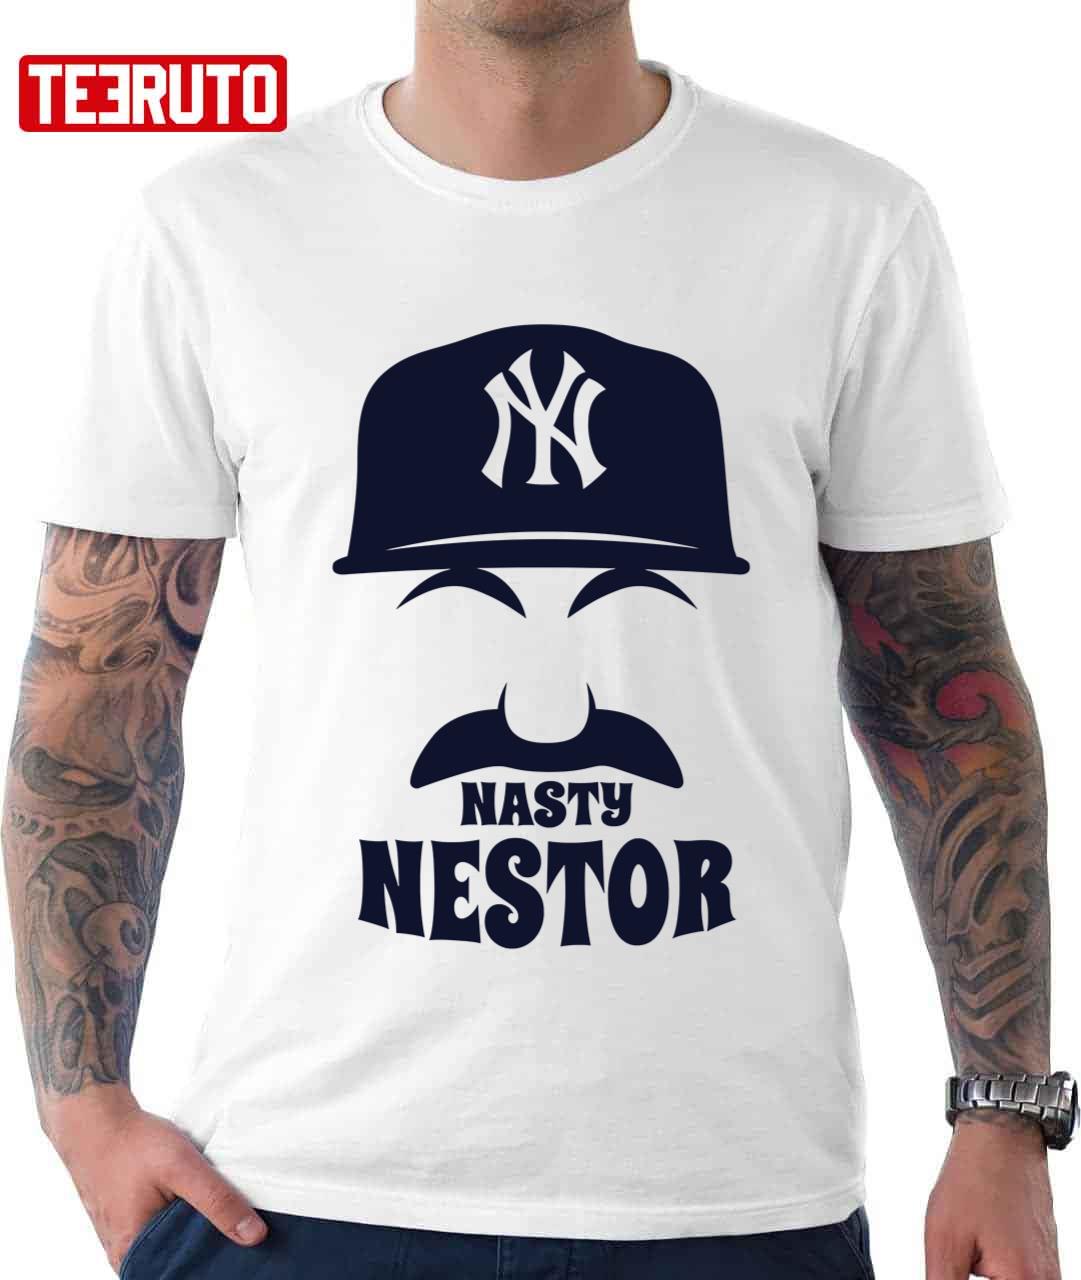 nasty nestor shirt